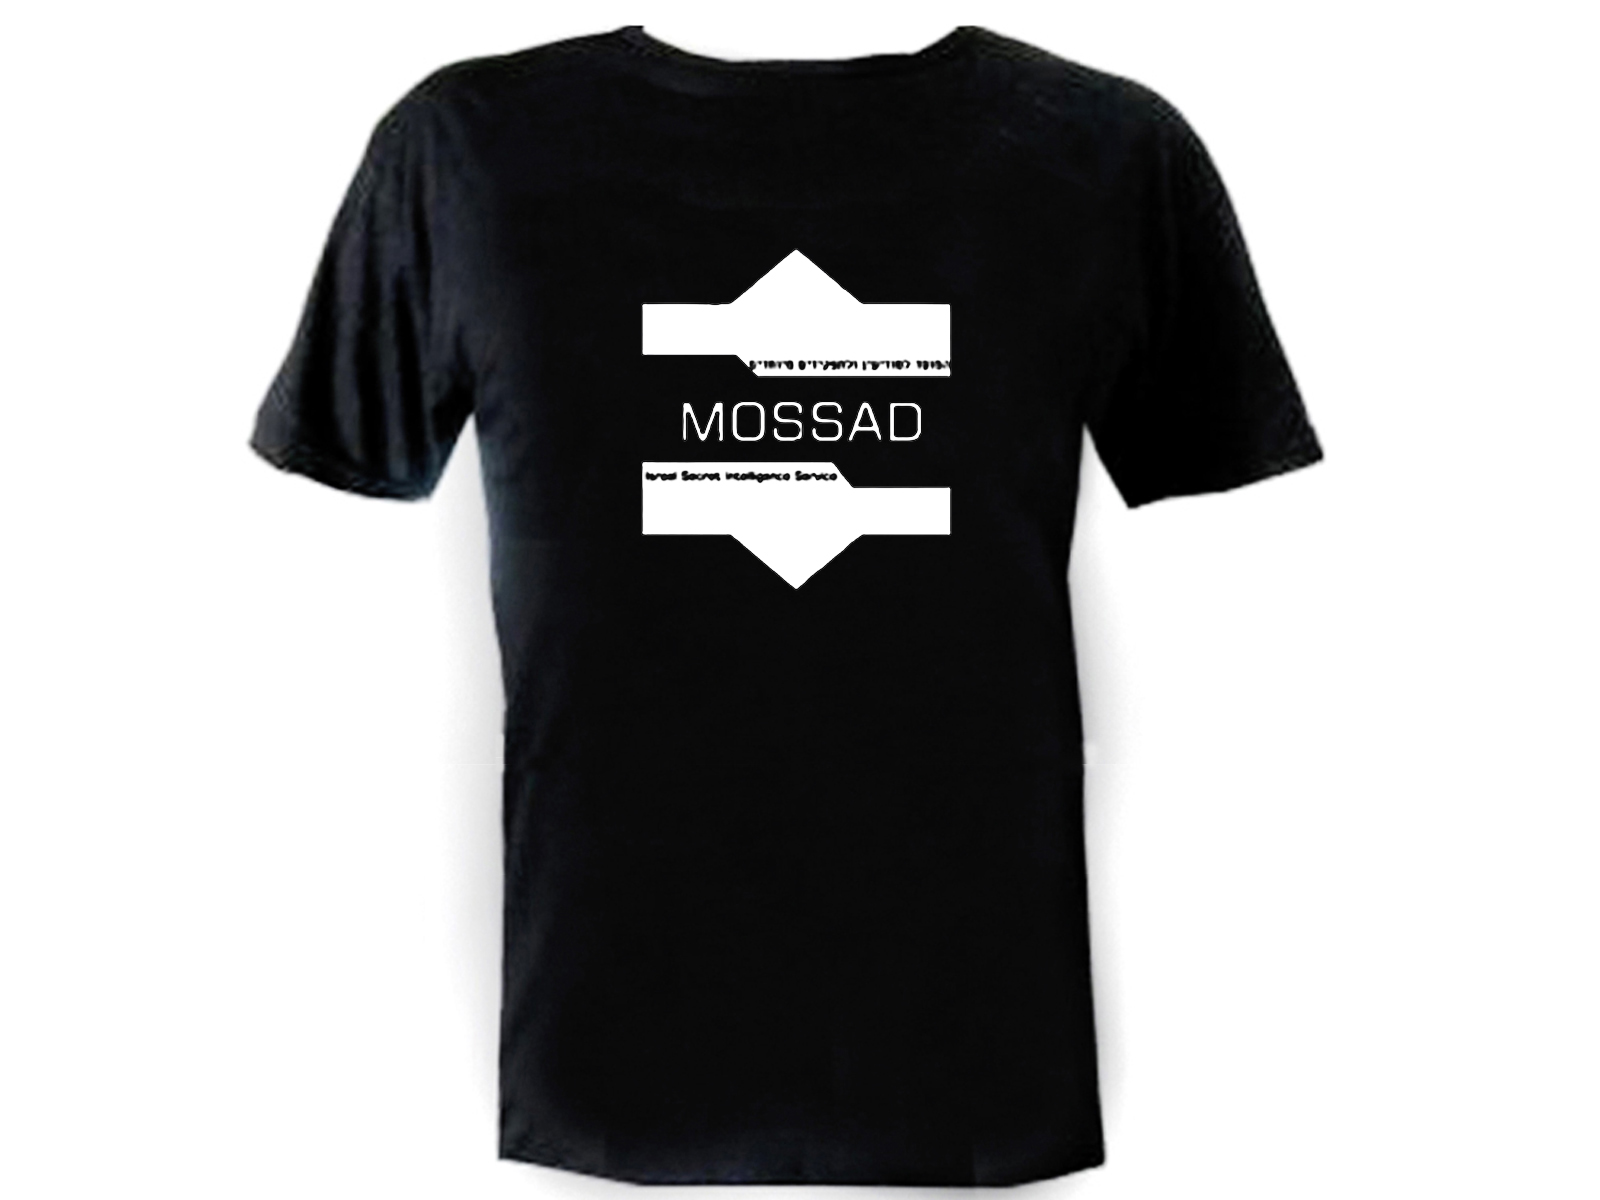 Israel secret service Mossad Israel CIA Hebrew T-Shirt (shirt,t,tee)